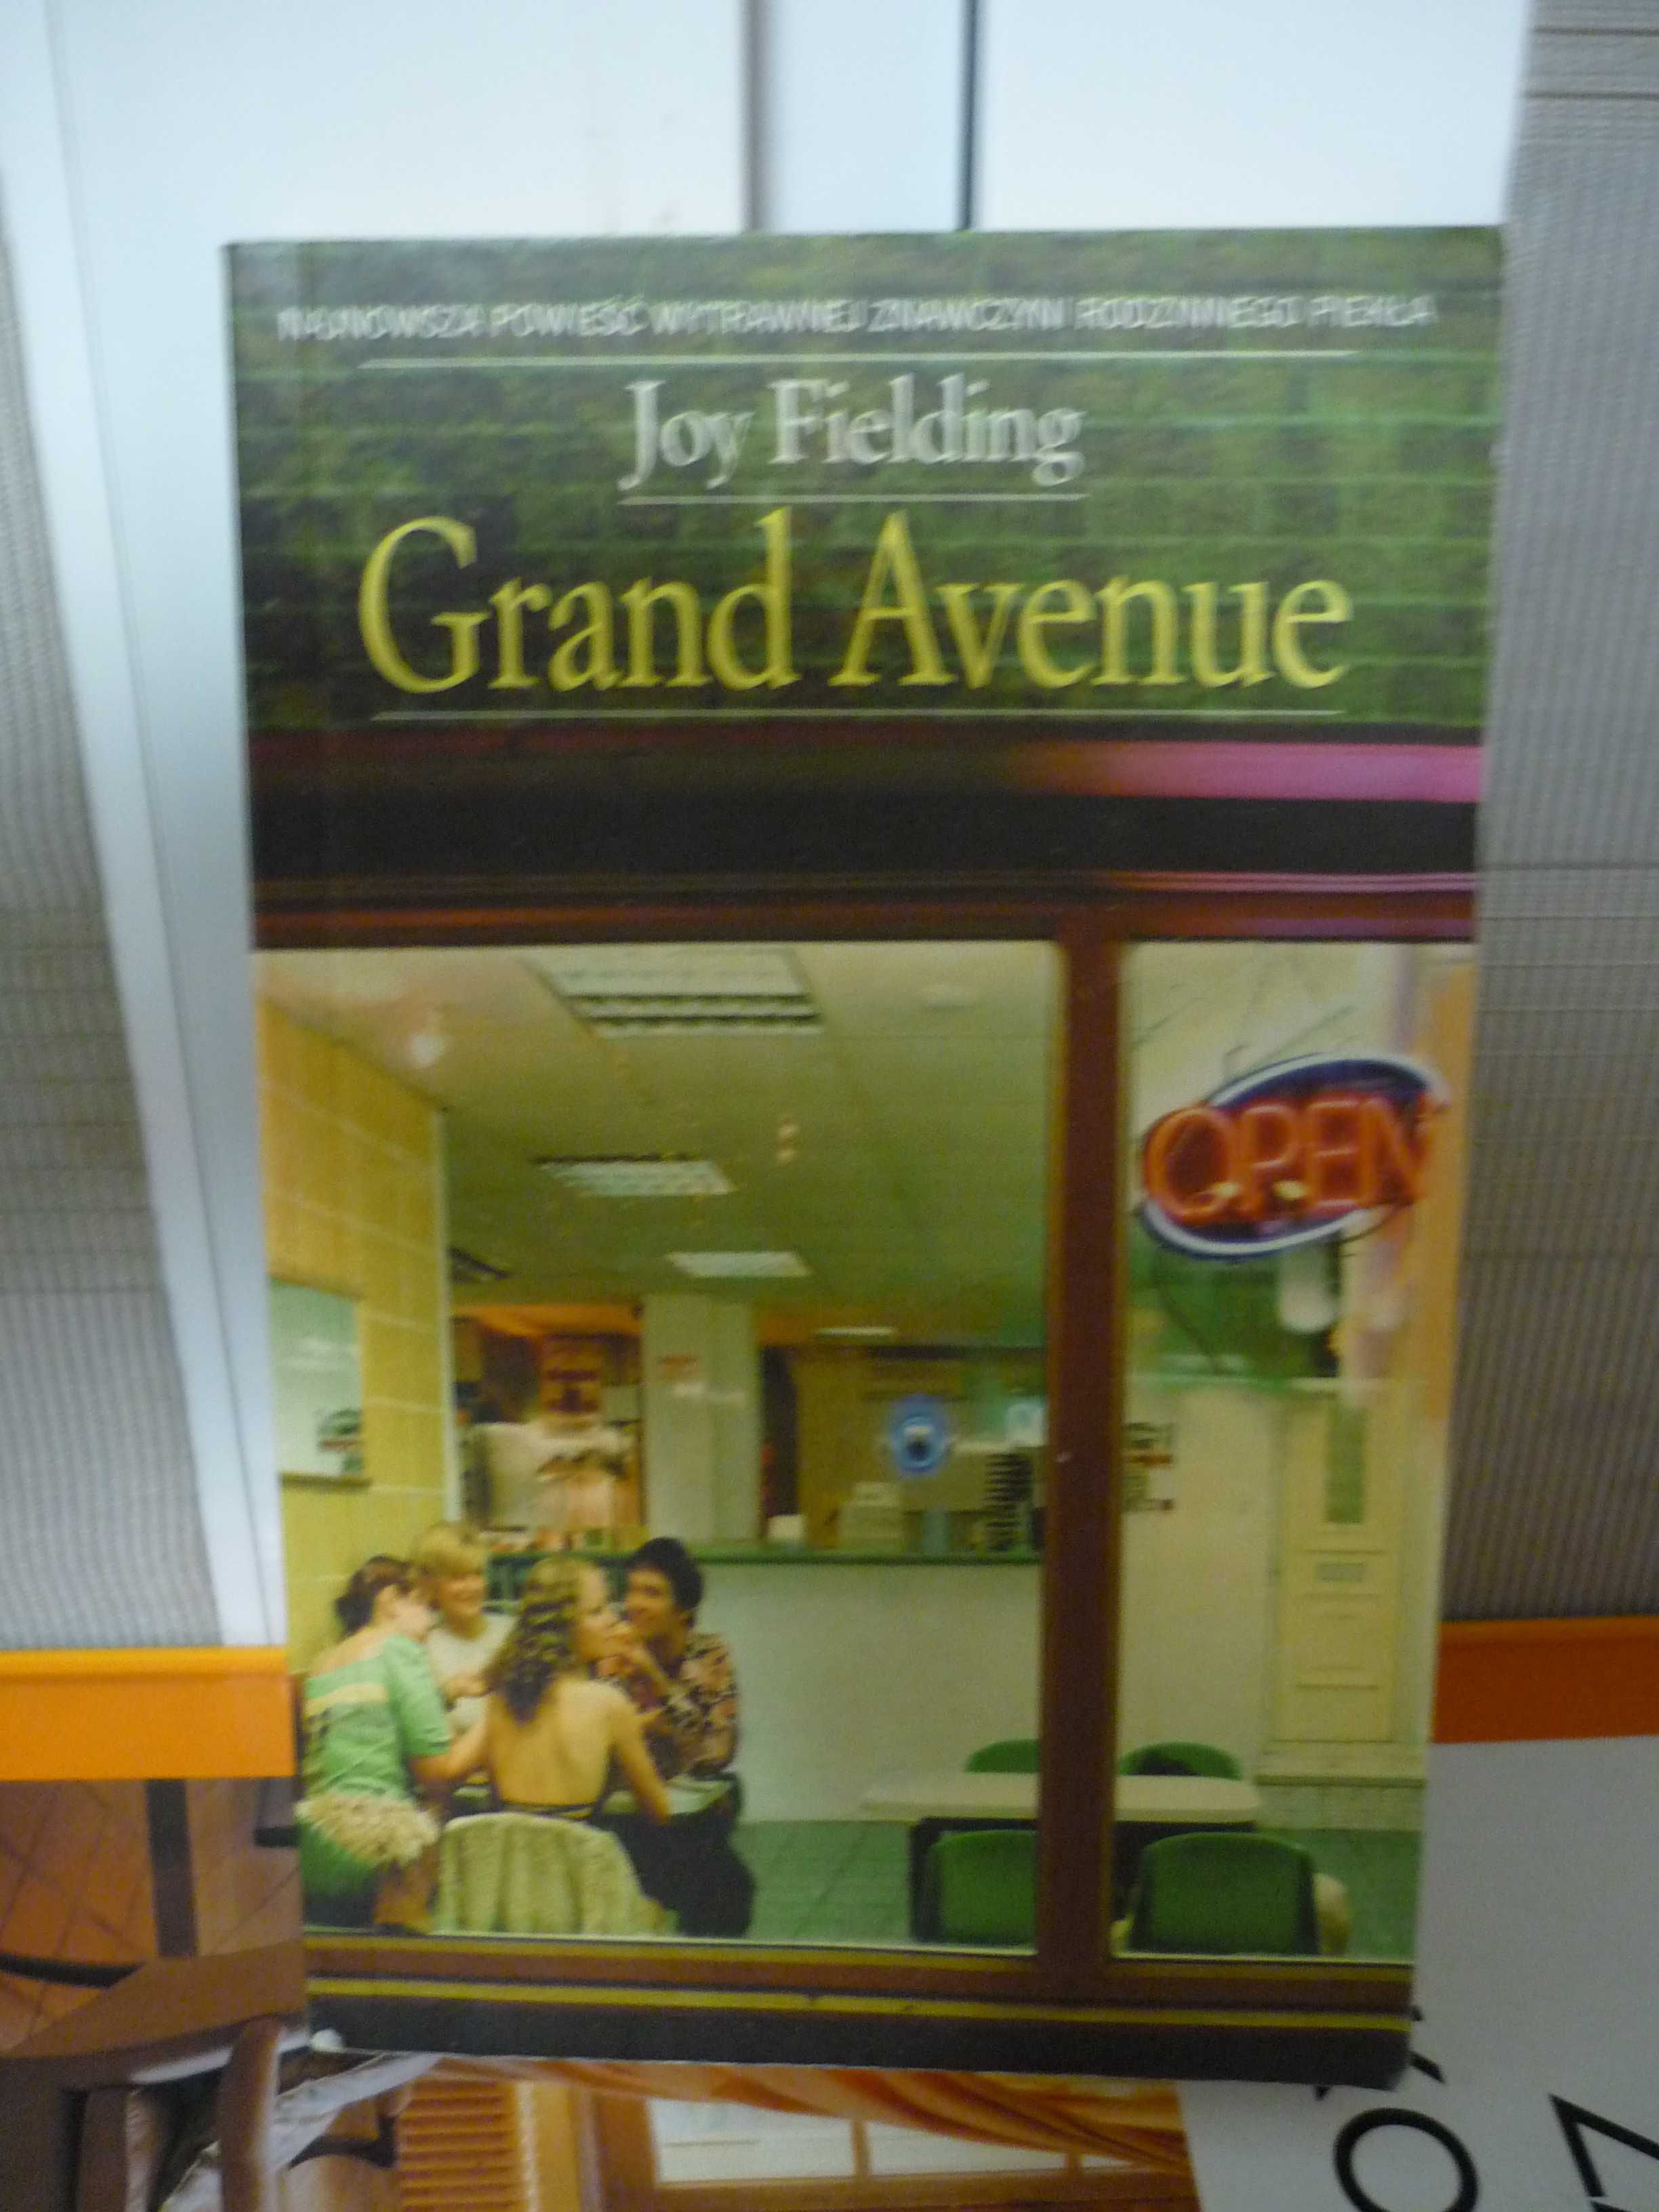 Grand Avenue , Joy Fielding.